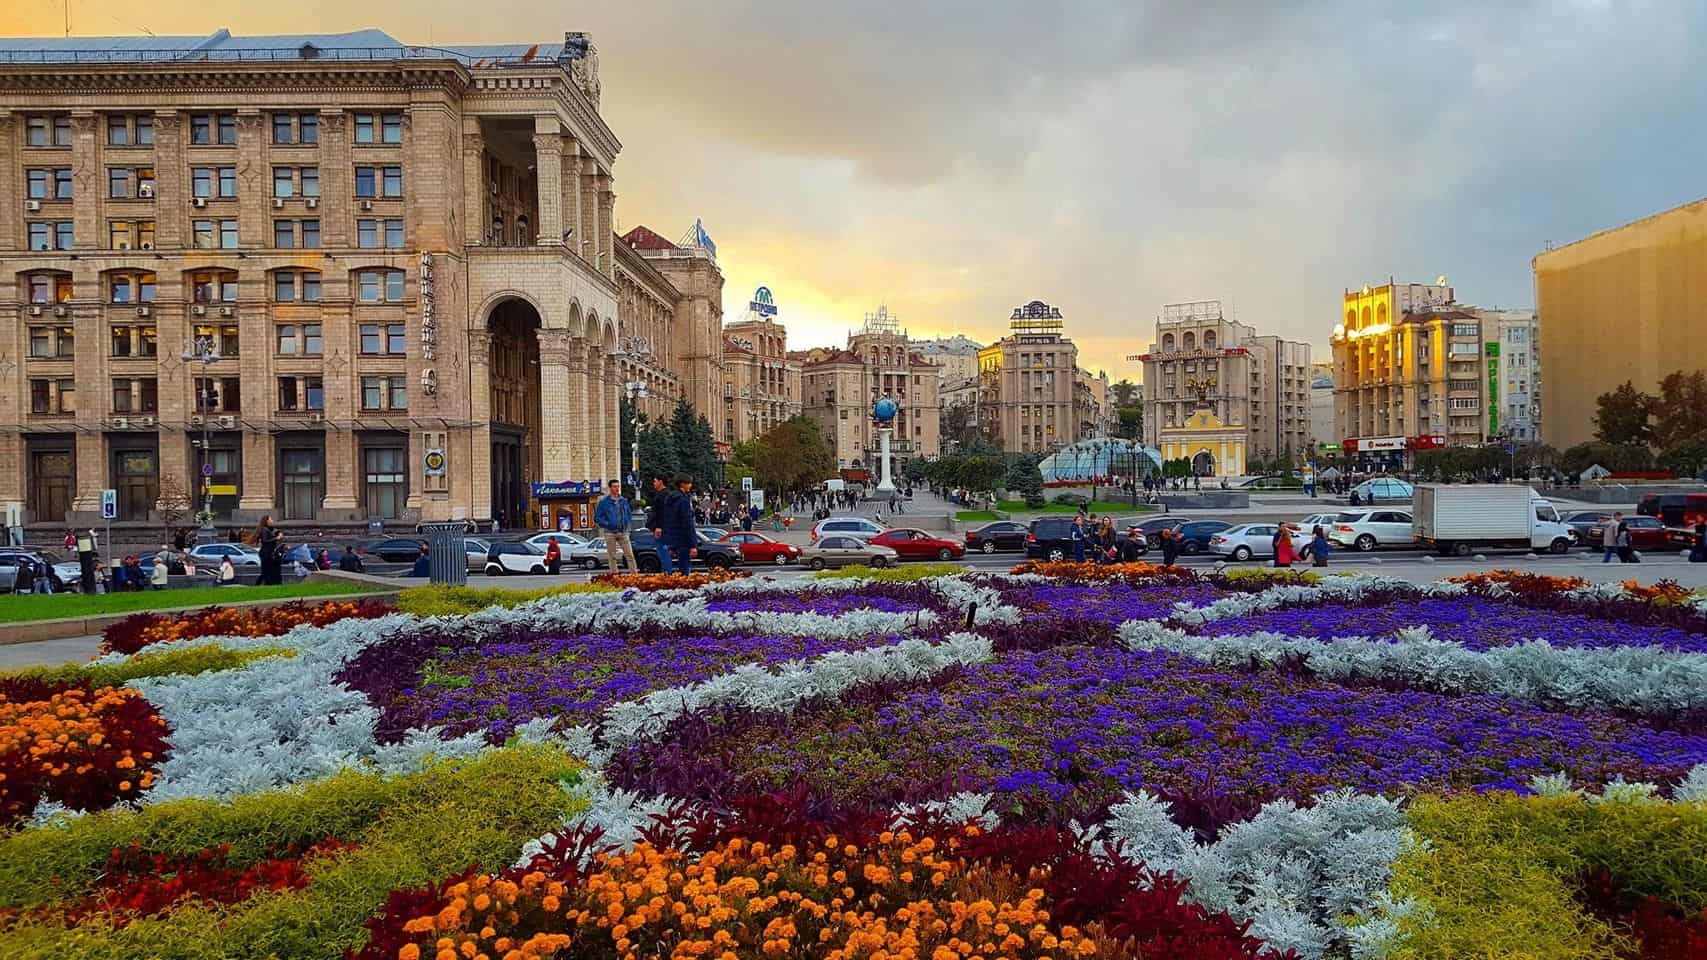 Kyiv - Ukraine center with flower garden